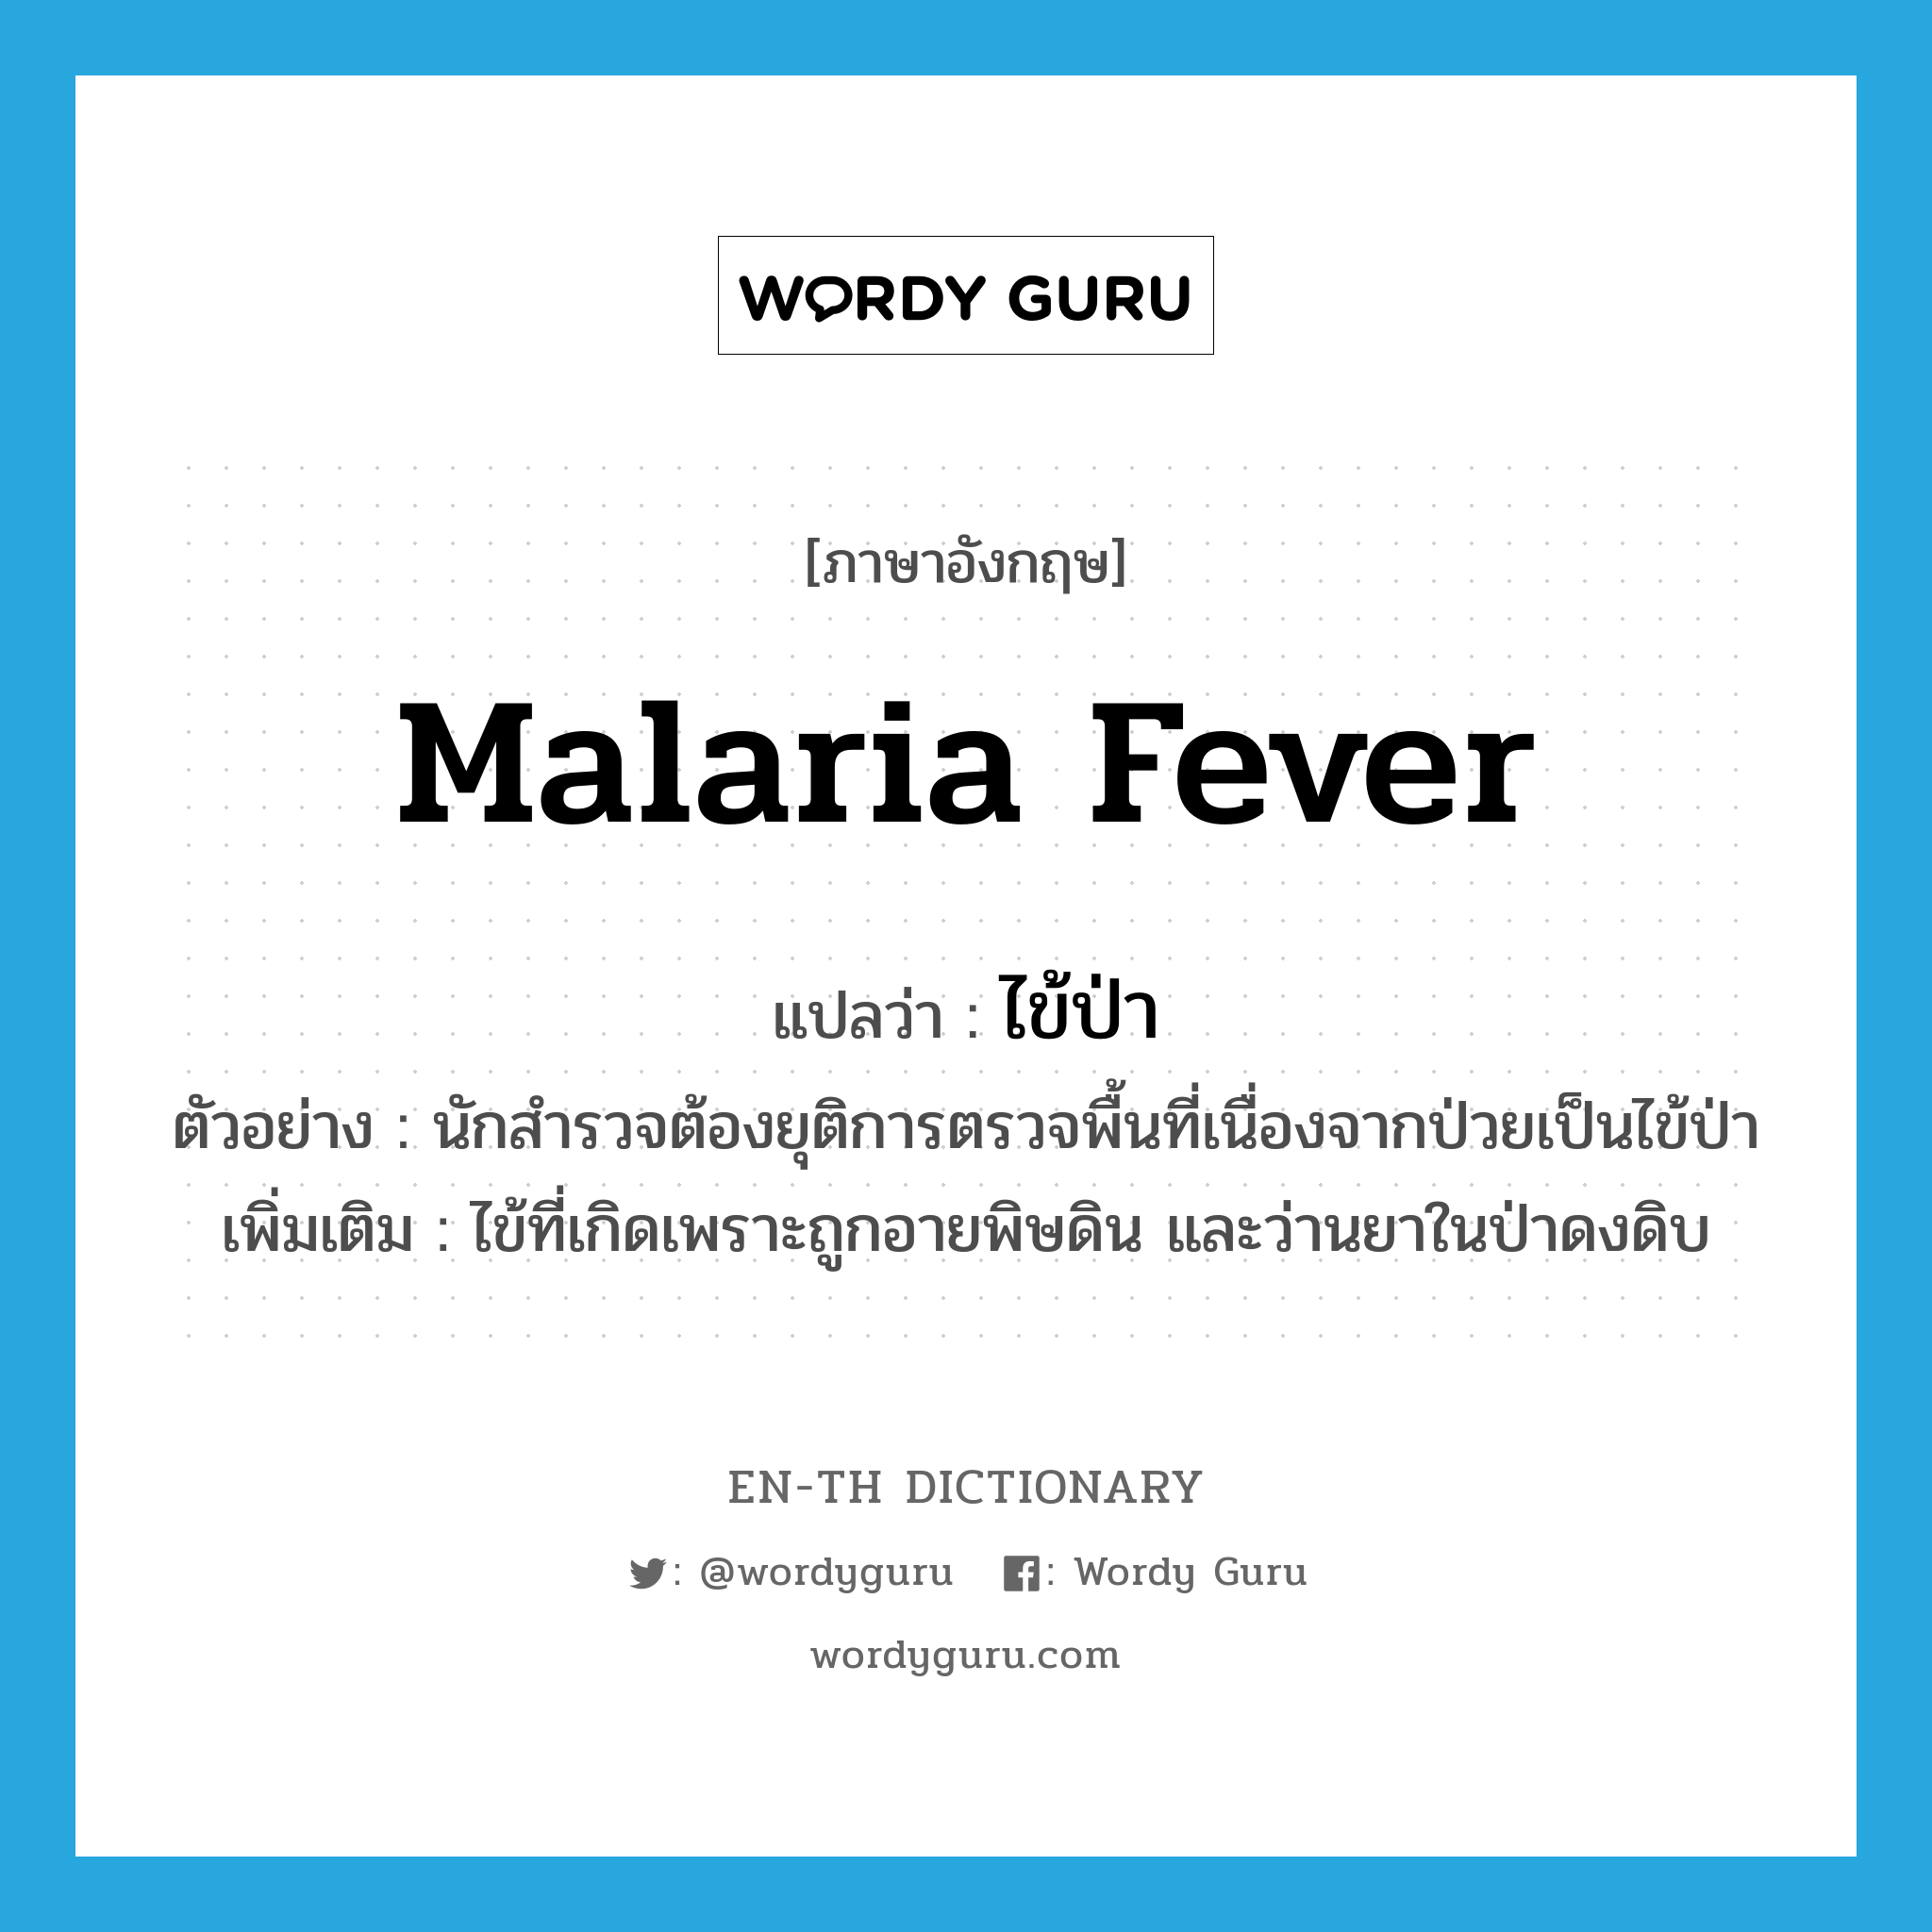 malaria fever แปลว่า?, คำศัพท์ภาษาอังกฤษ malaria fever แปลว่า ไข้ป่า ประเภท N ตัวอย่าง นักสำรวจต้องยุติการตรวจพื้นที่เนื่องจากป่วยเป็นไข้ป่า เพิ่มเติม ไข้ที่เกิดเพราะถูกอายพิษดิน และว่านยาในป่าดงดิบ หมวด N